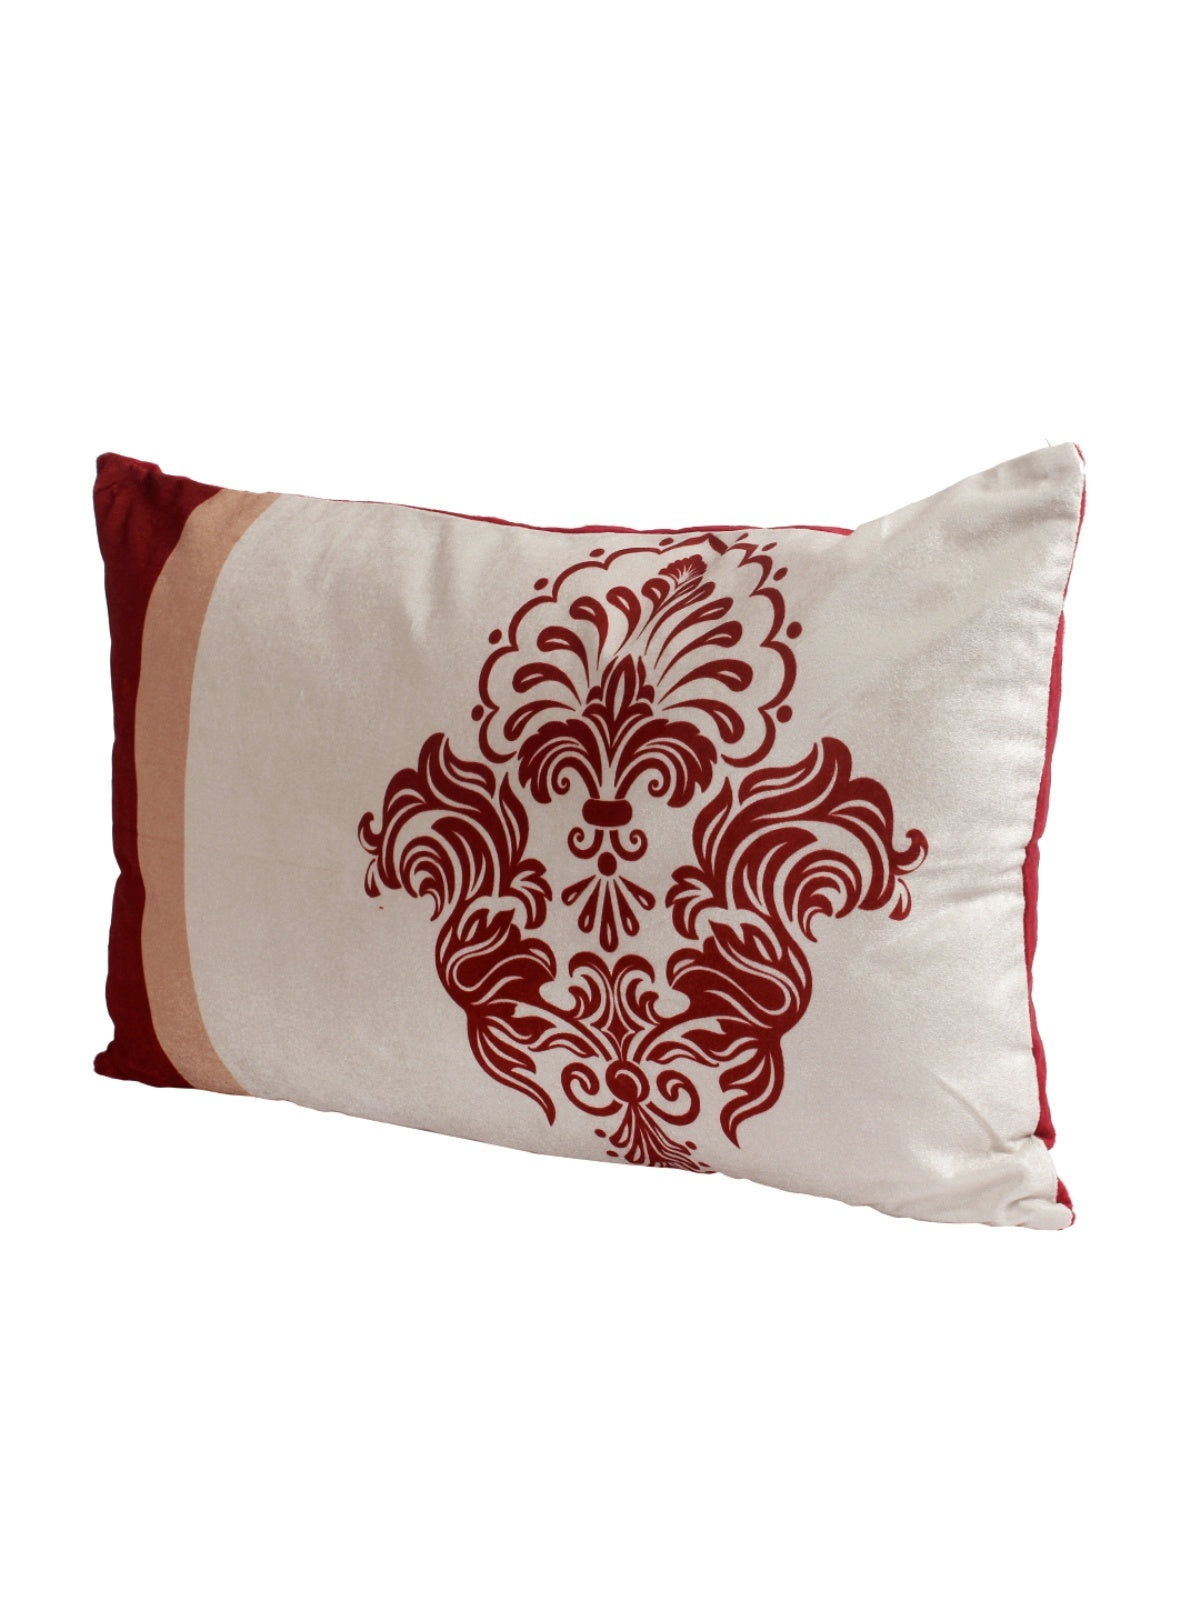 White & Maroon Polyester Velvet Pillow Covers - Pack of 2